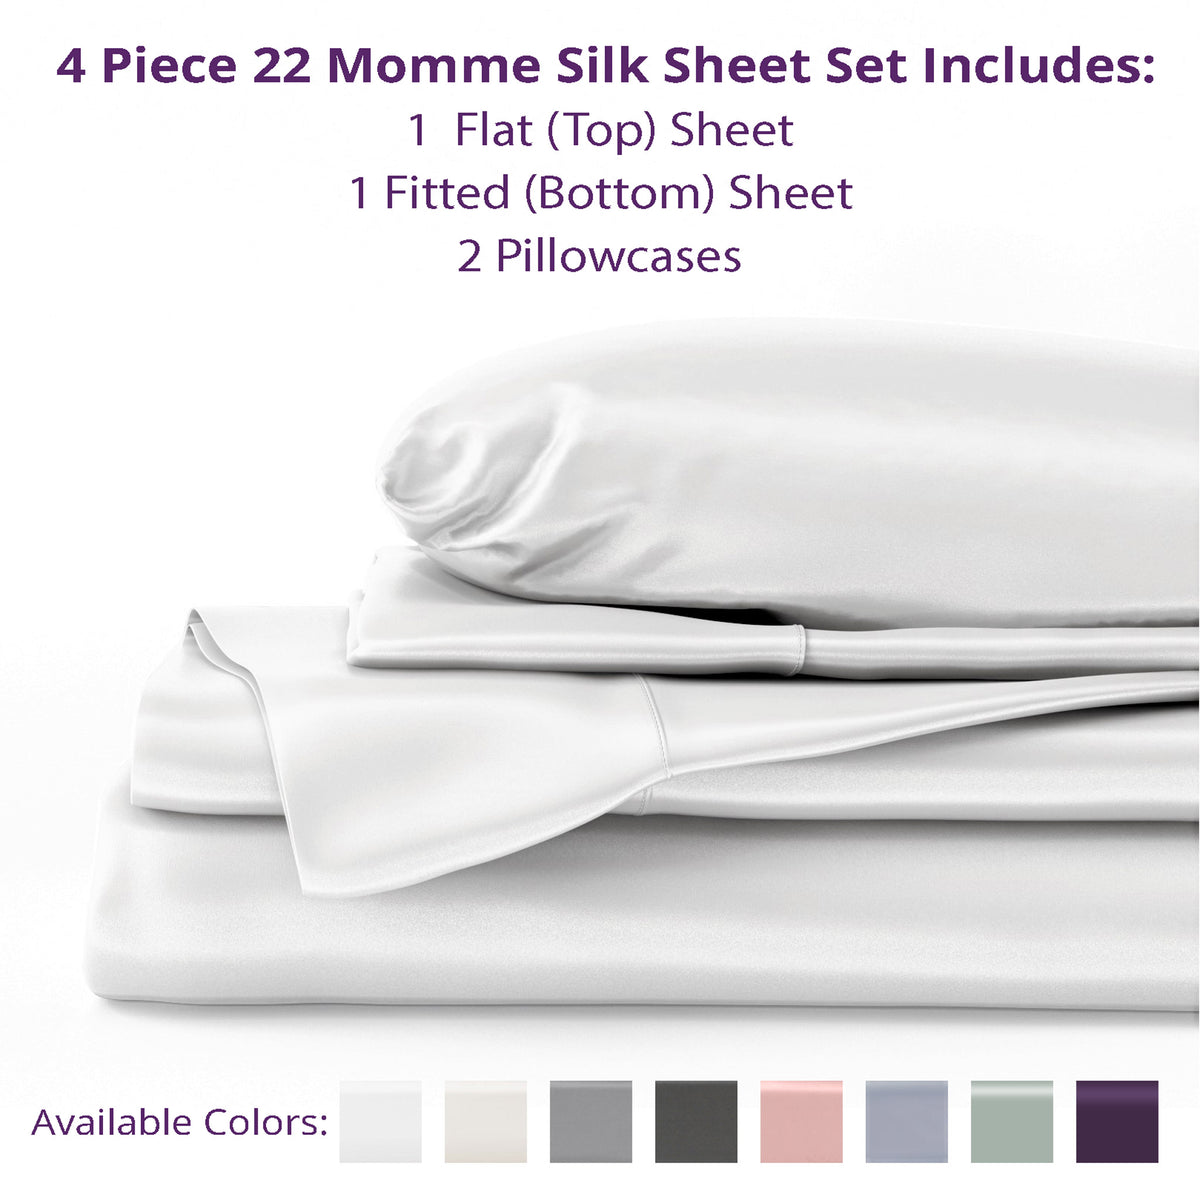 22 Momme Silk Sheet Sets - Queen